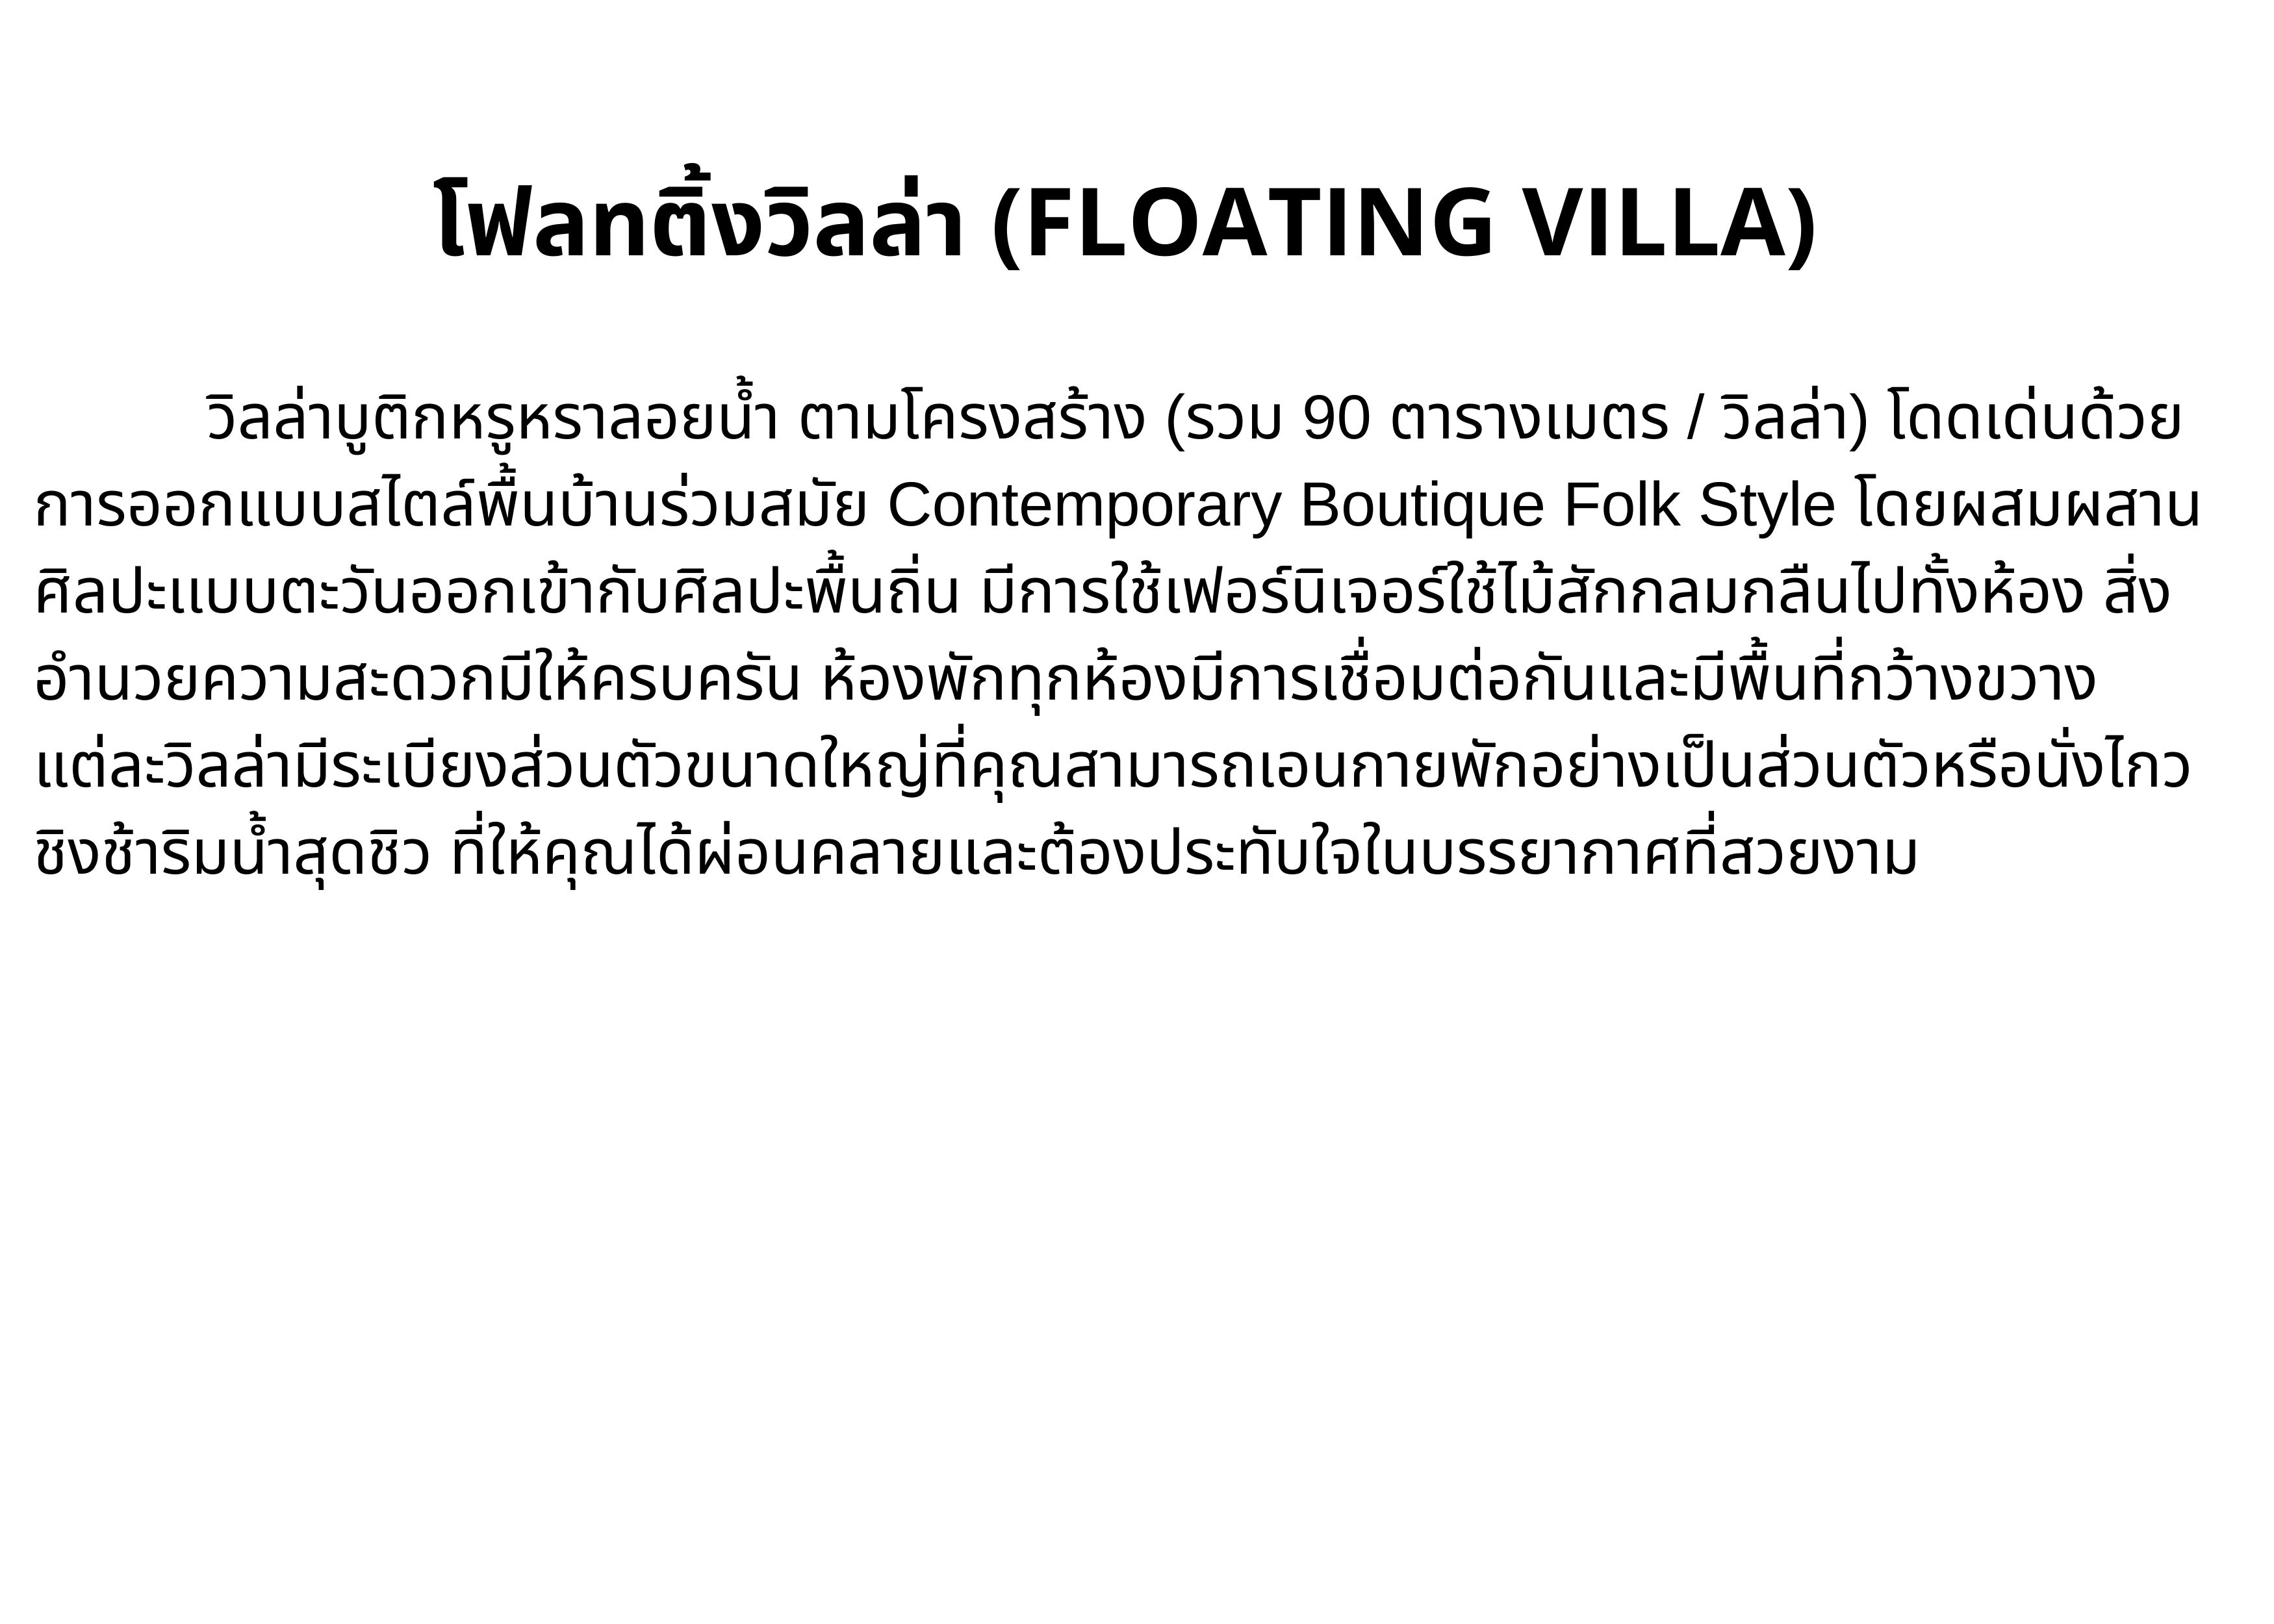 เกี่ยวกับ [E-vo] The Float House River Kwai, กาญจนบุรี - เข้าพักได้ถึง 31 ต.ค. 66 ห้อง Floating Villa 1 คืน พร้อมอาหารเช้า 2 ท่าน